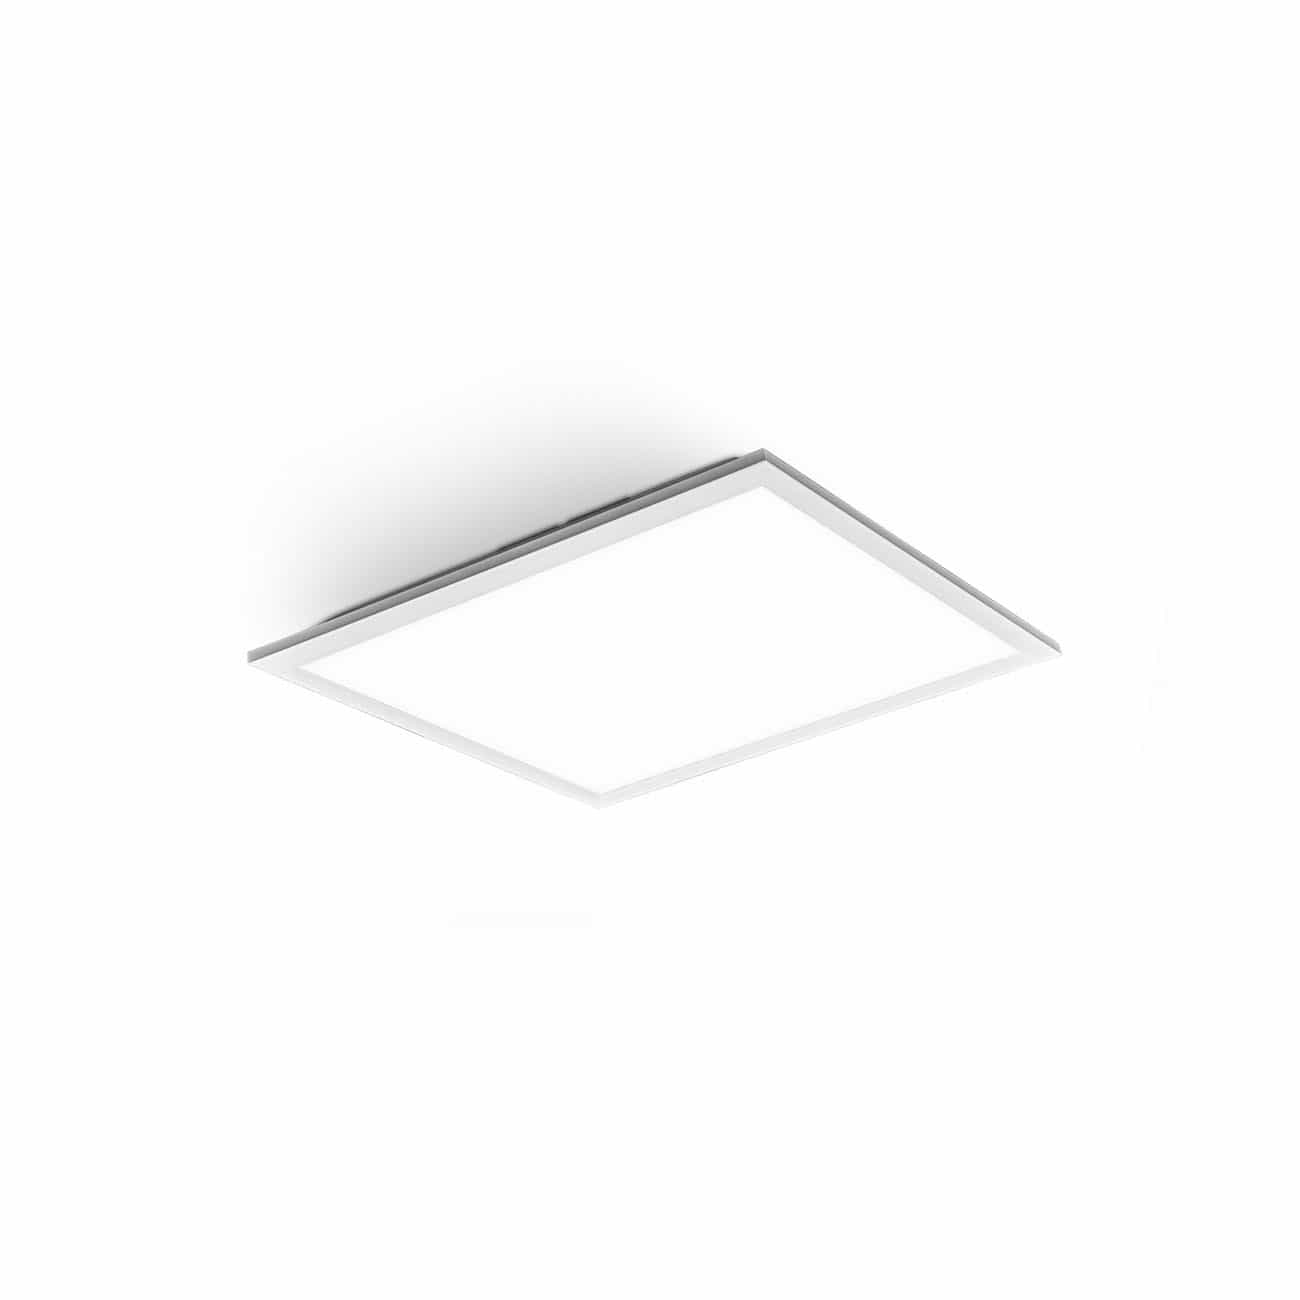 Ultraflaches LED Decken-Panel - 29x29cm - Büro-Deckenlampe Deckenleuchte Küche 12W 1300lm 4000K neutralweiße Lichtfarbe | weiß - 8